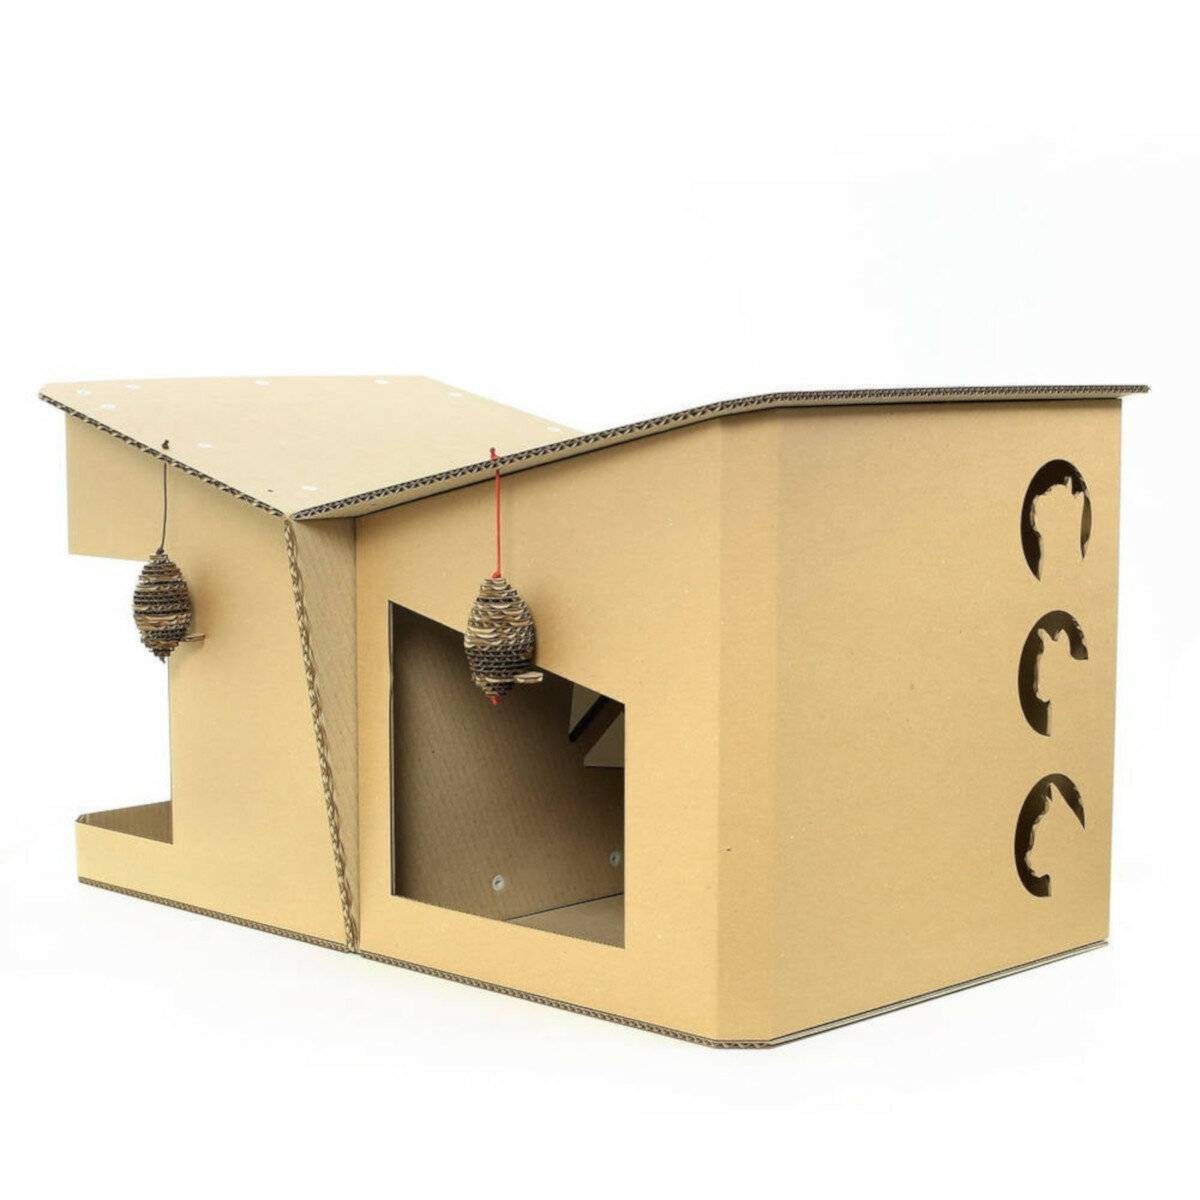 Своими руками дом для кошки из картона: рекомендации по созданию кошачьих домиков.